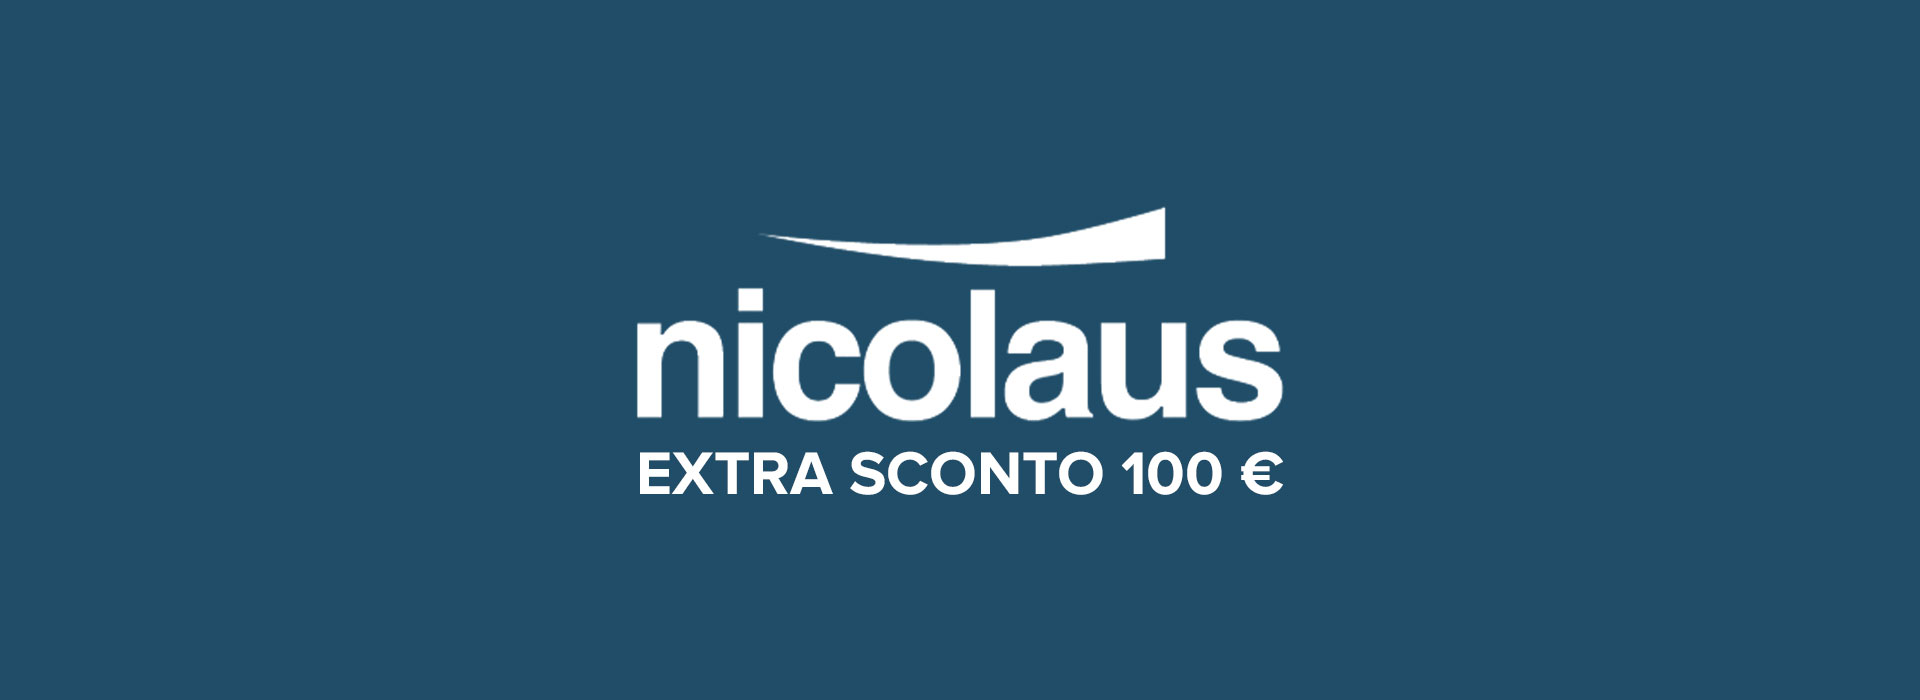 Promozione Nicolaus: Extra sconto 100 €